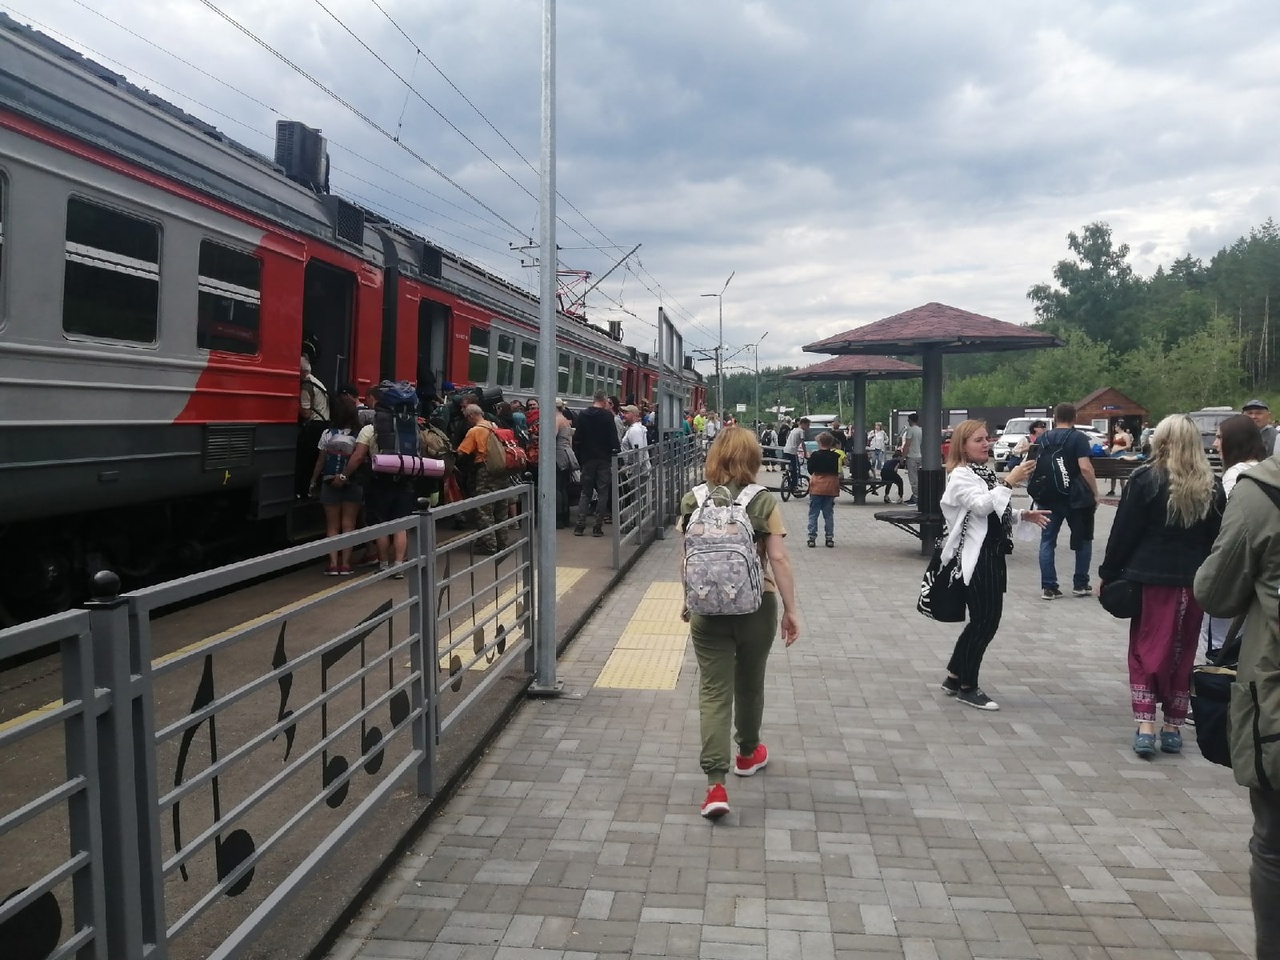  В августе изменятся правила посадки в поезда: на вокзал больше не пустят 